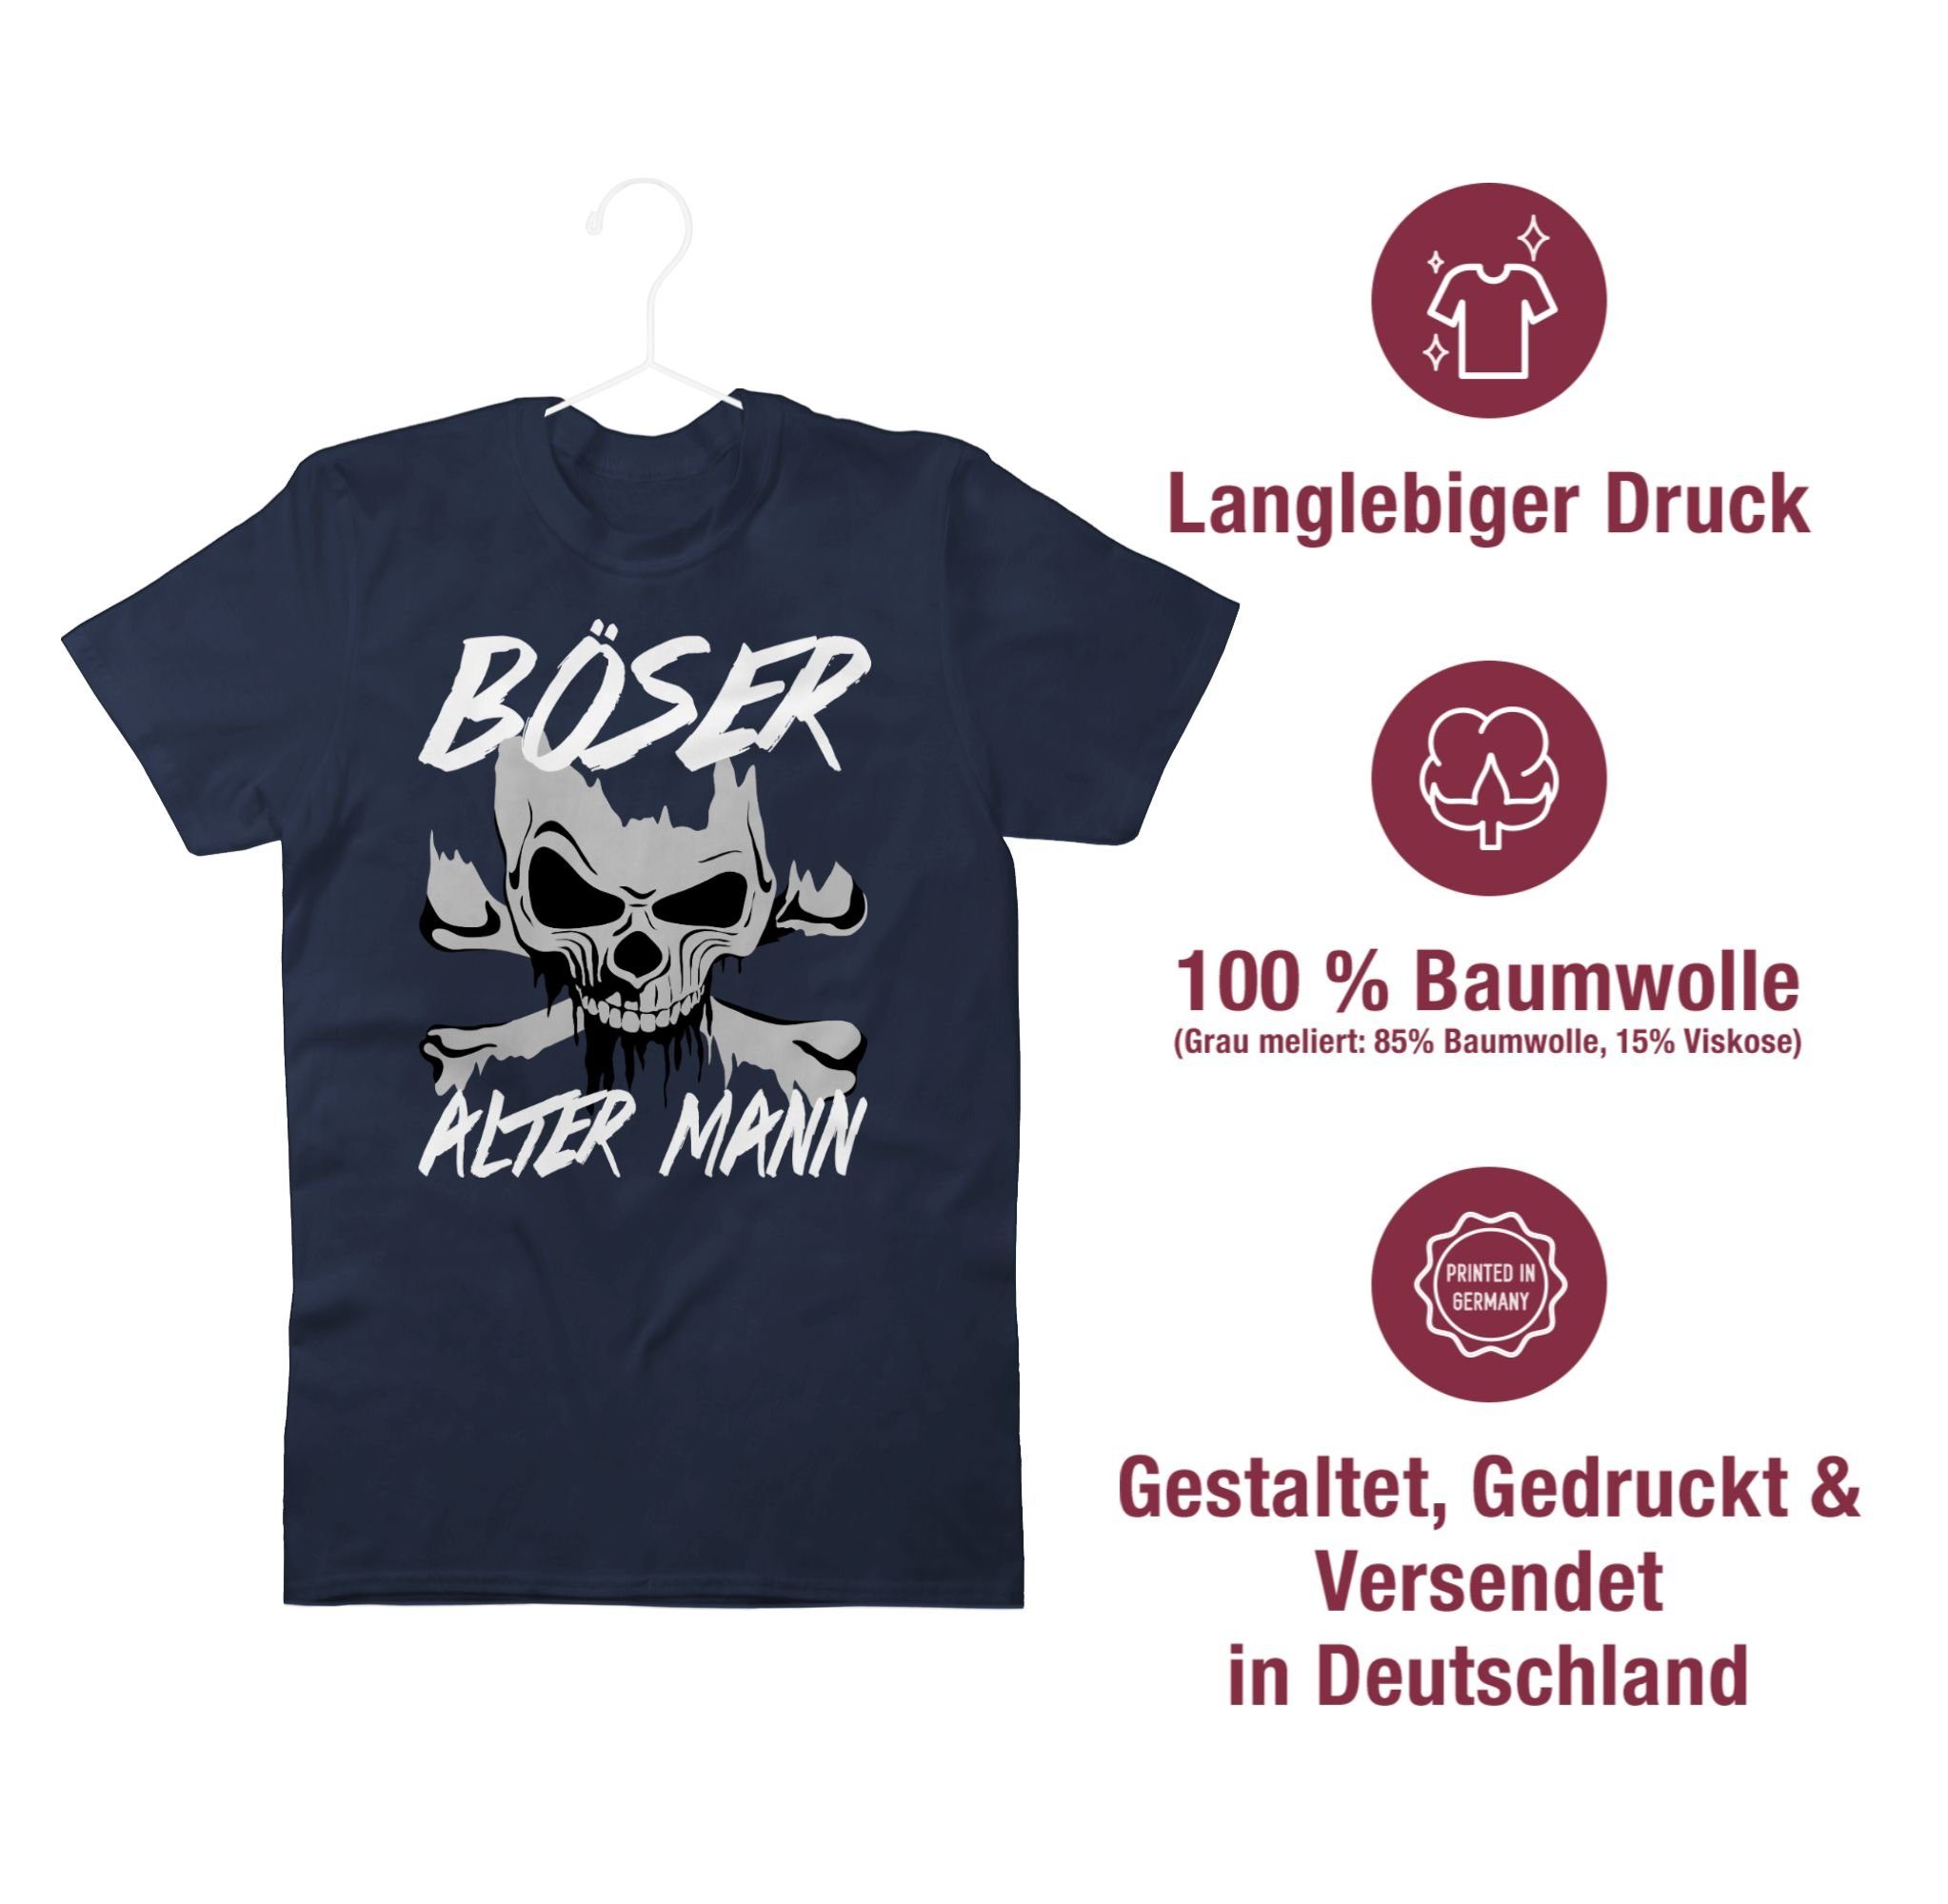 & Shirtracer Blau Totenkopf Böser Navy Mann Piraten 03 T-Shirt alter